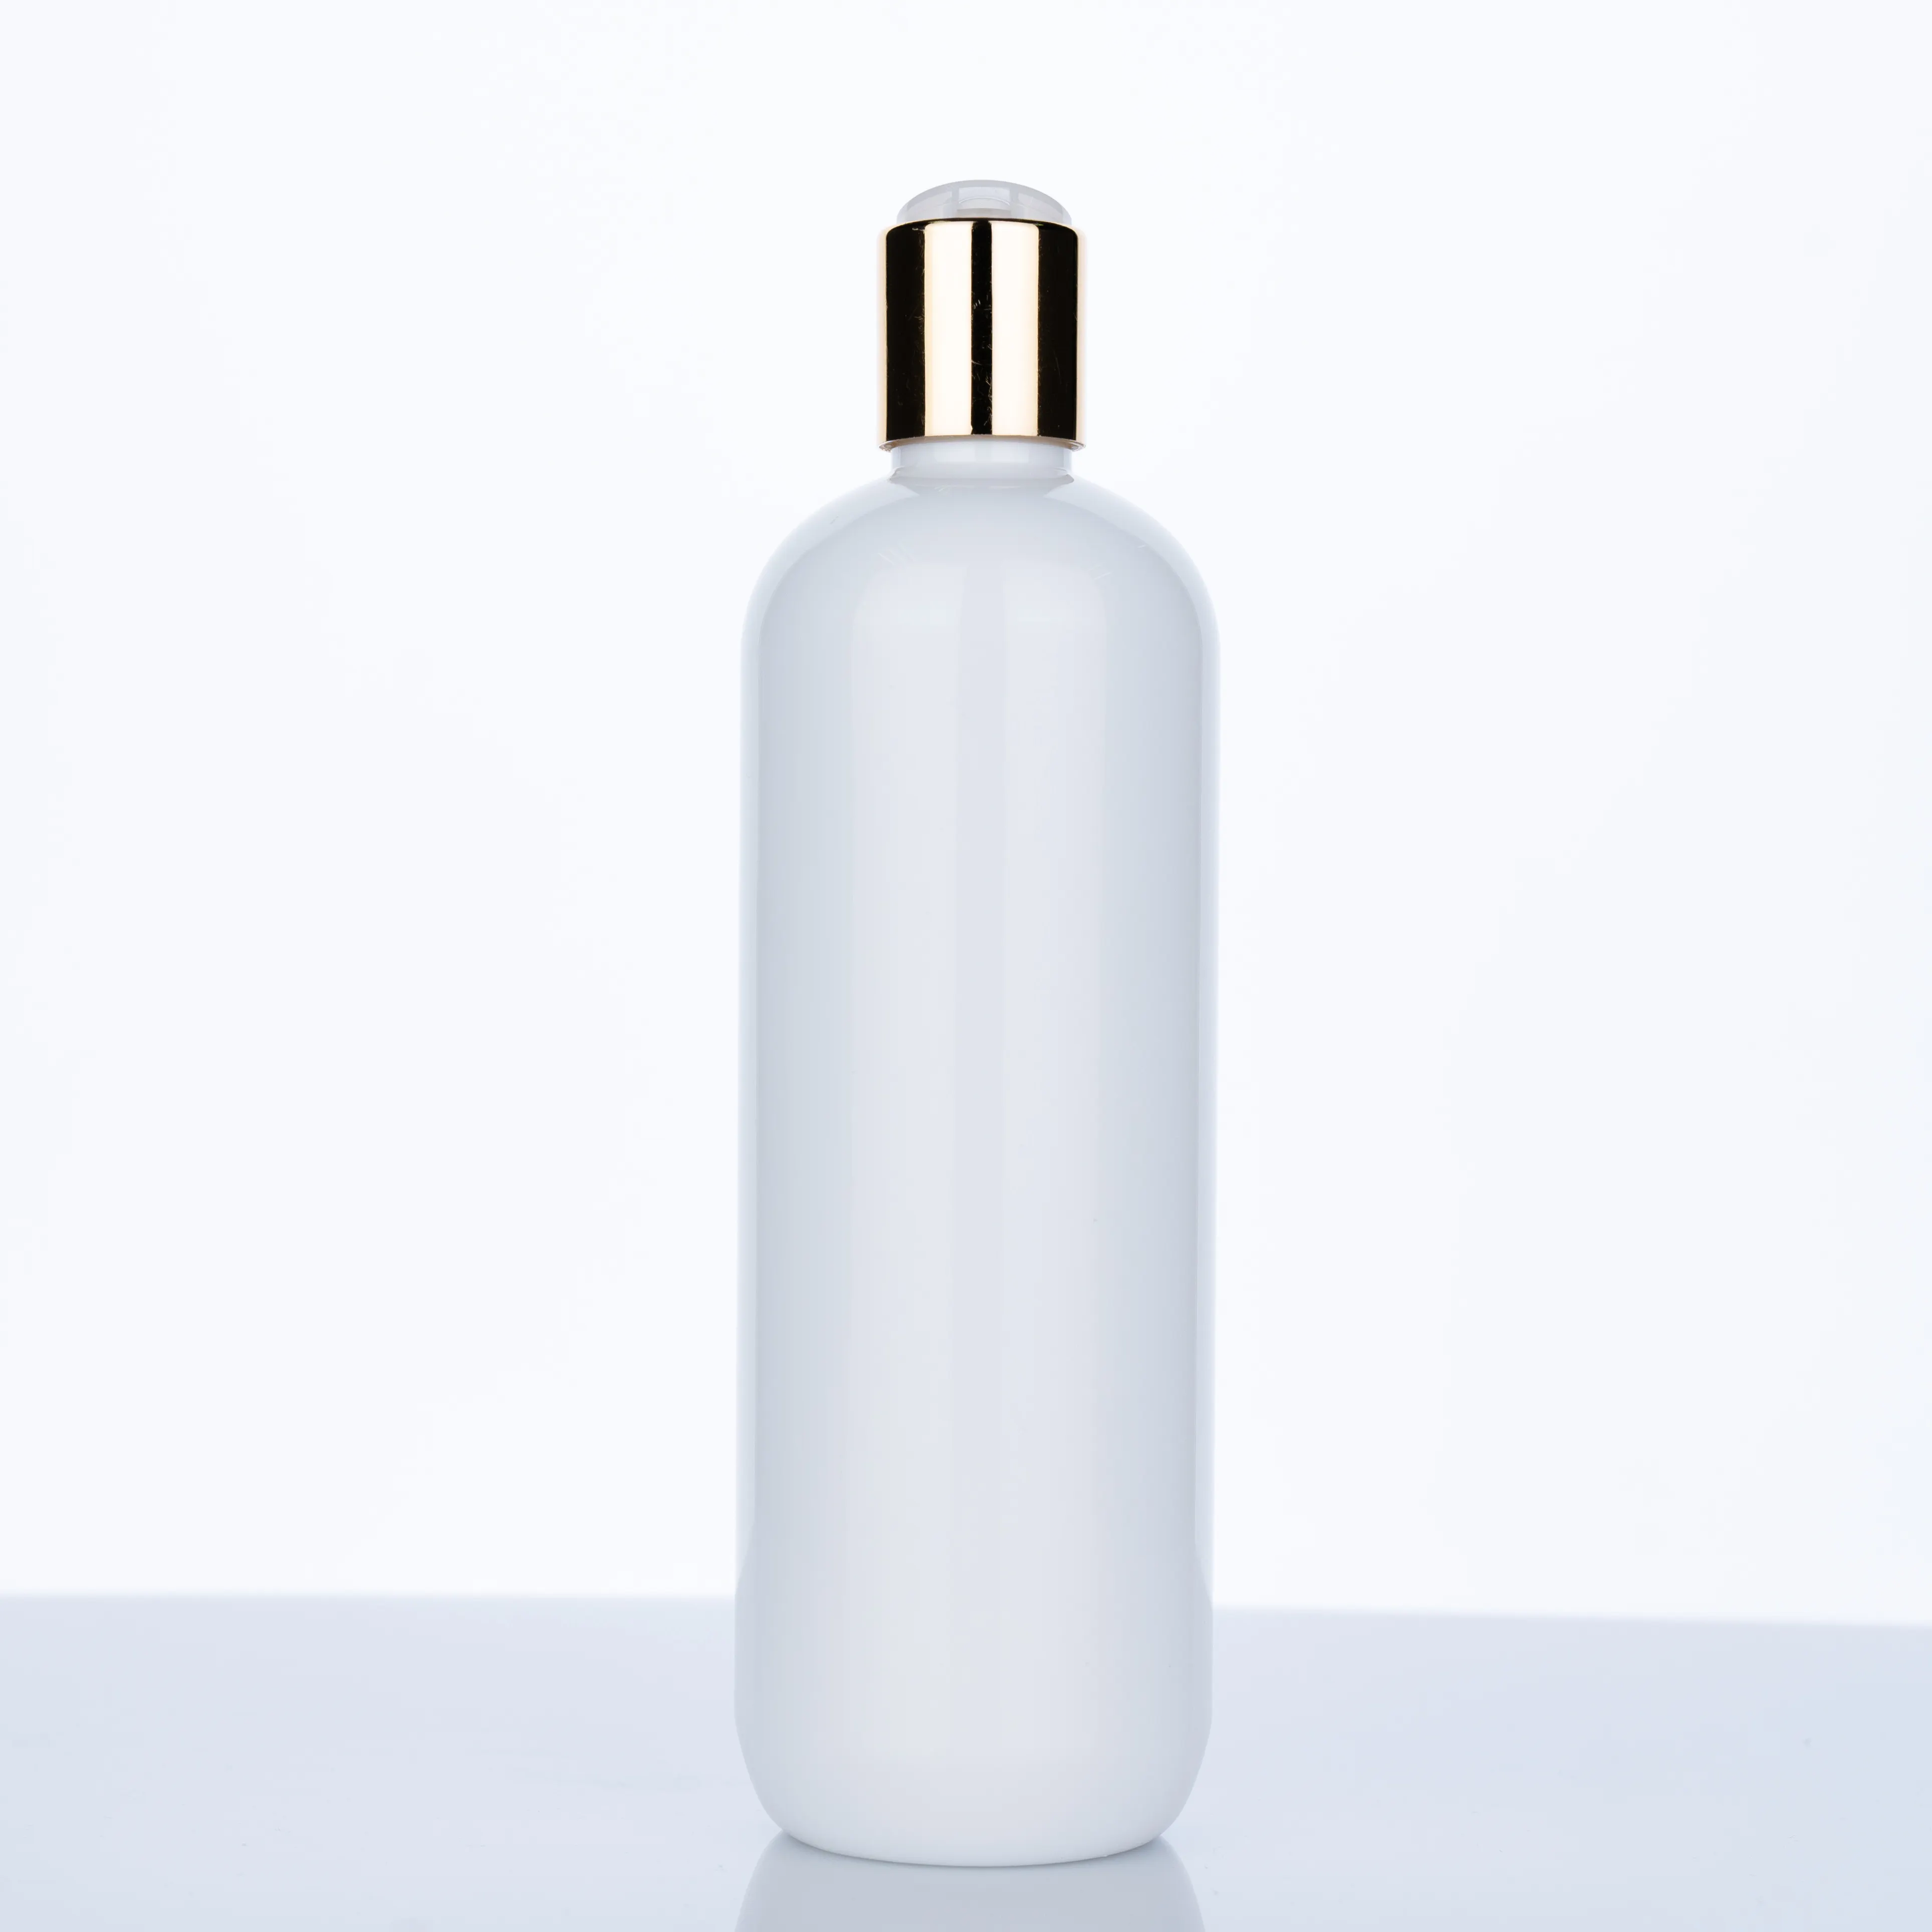 Botella redonda de plástico para el cuidado de la piel, recipiente de plástico con tapa abatible para loción, crema corporal, exprimidor de aceite, color blanco, 500ml